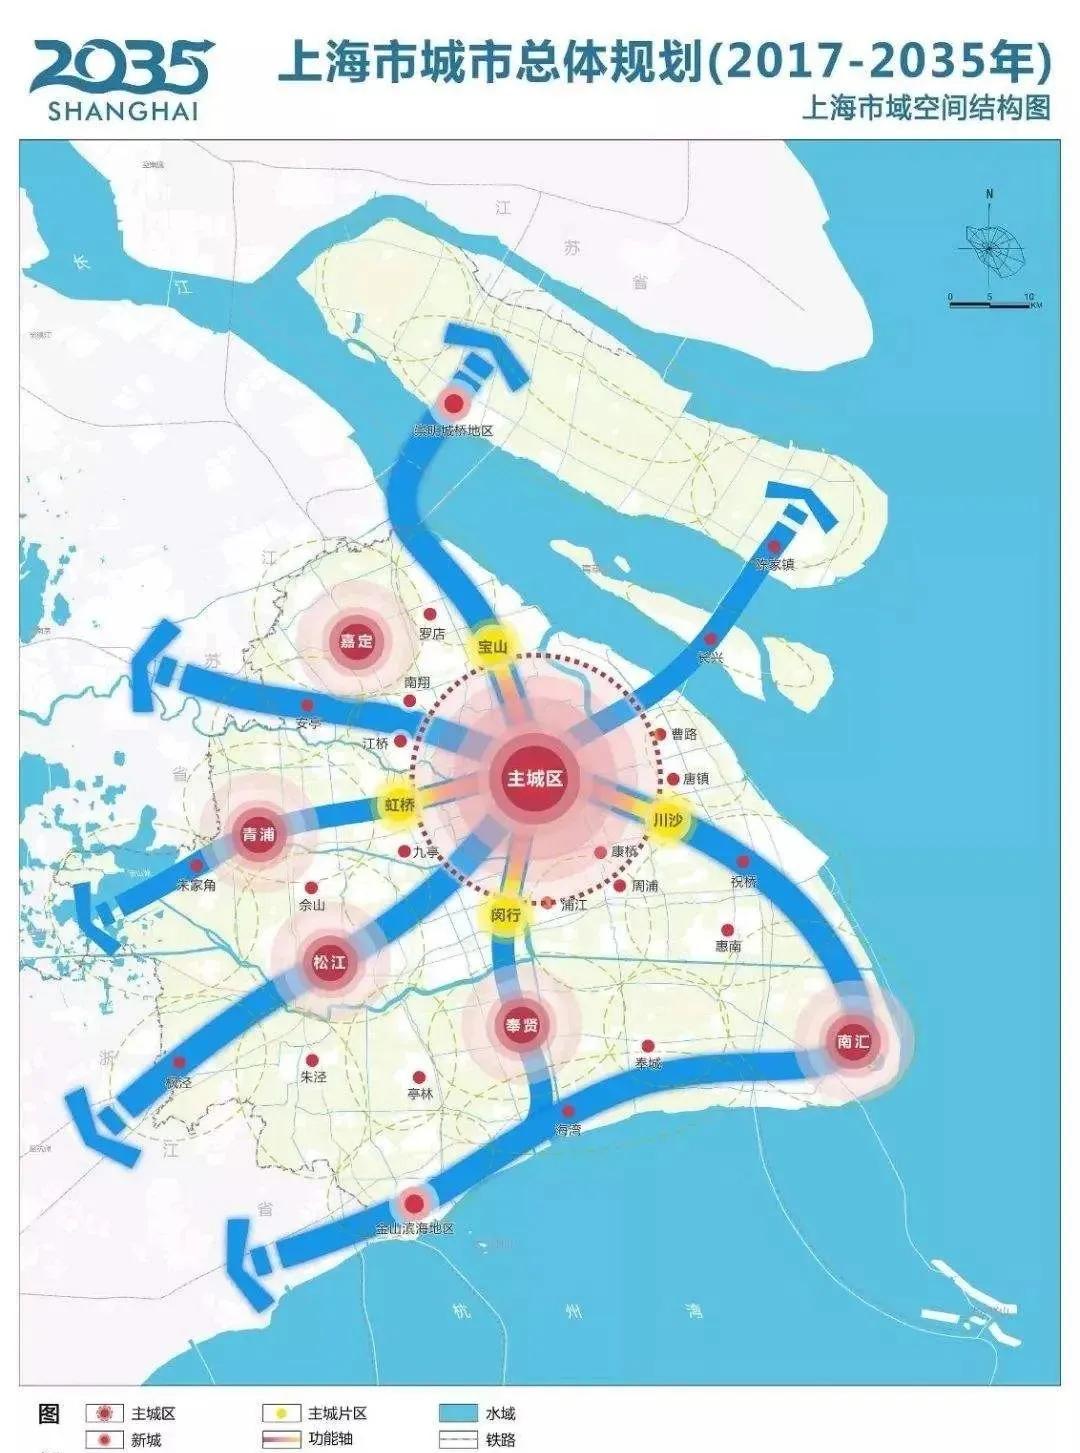 规划指出, 嘉定,青浦,松江,奉贤,南汇(临港)五个新城将成为上海的